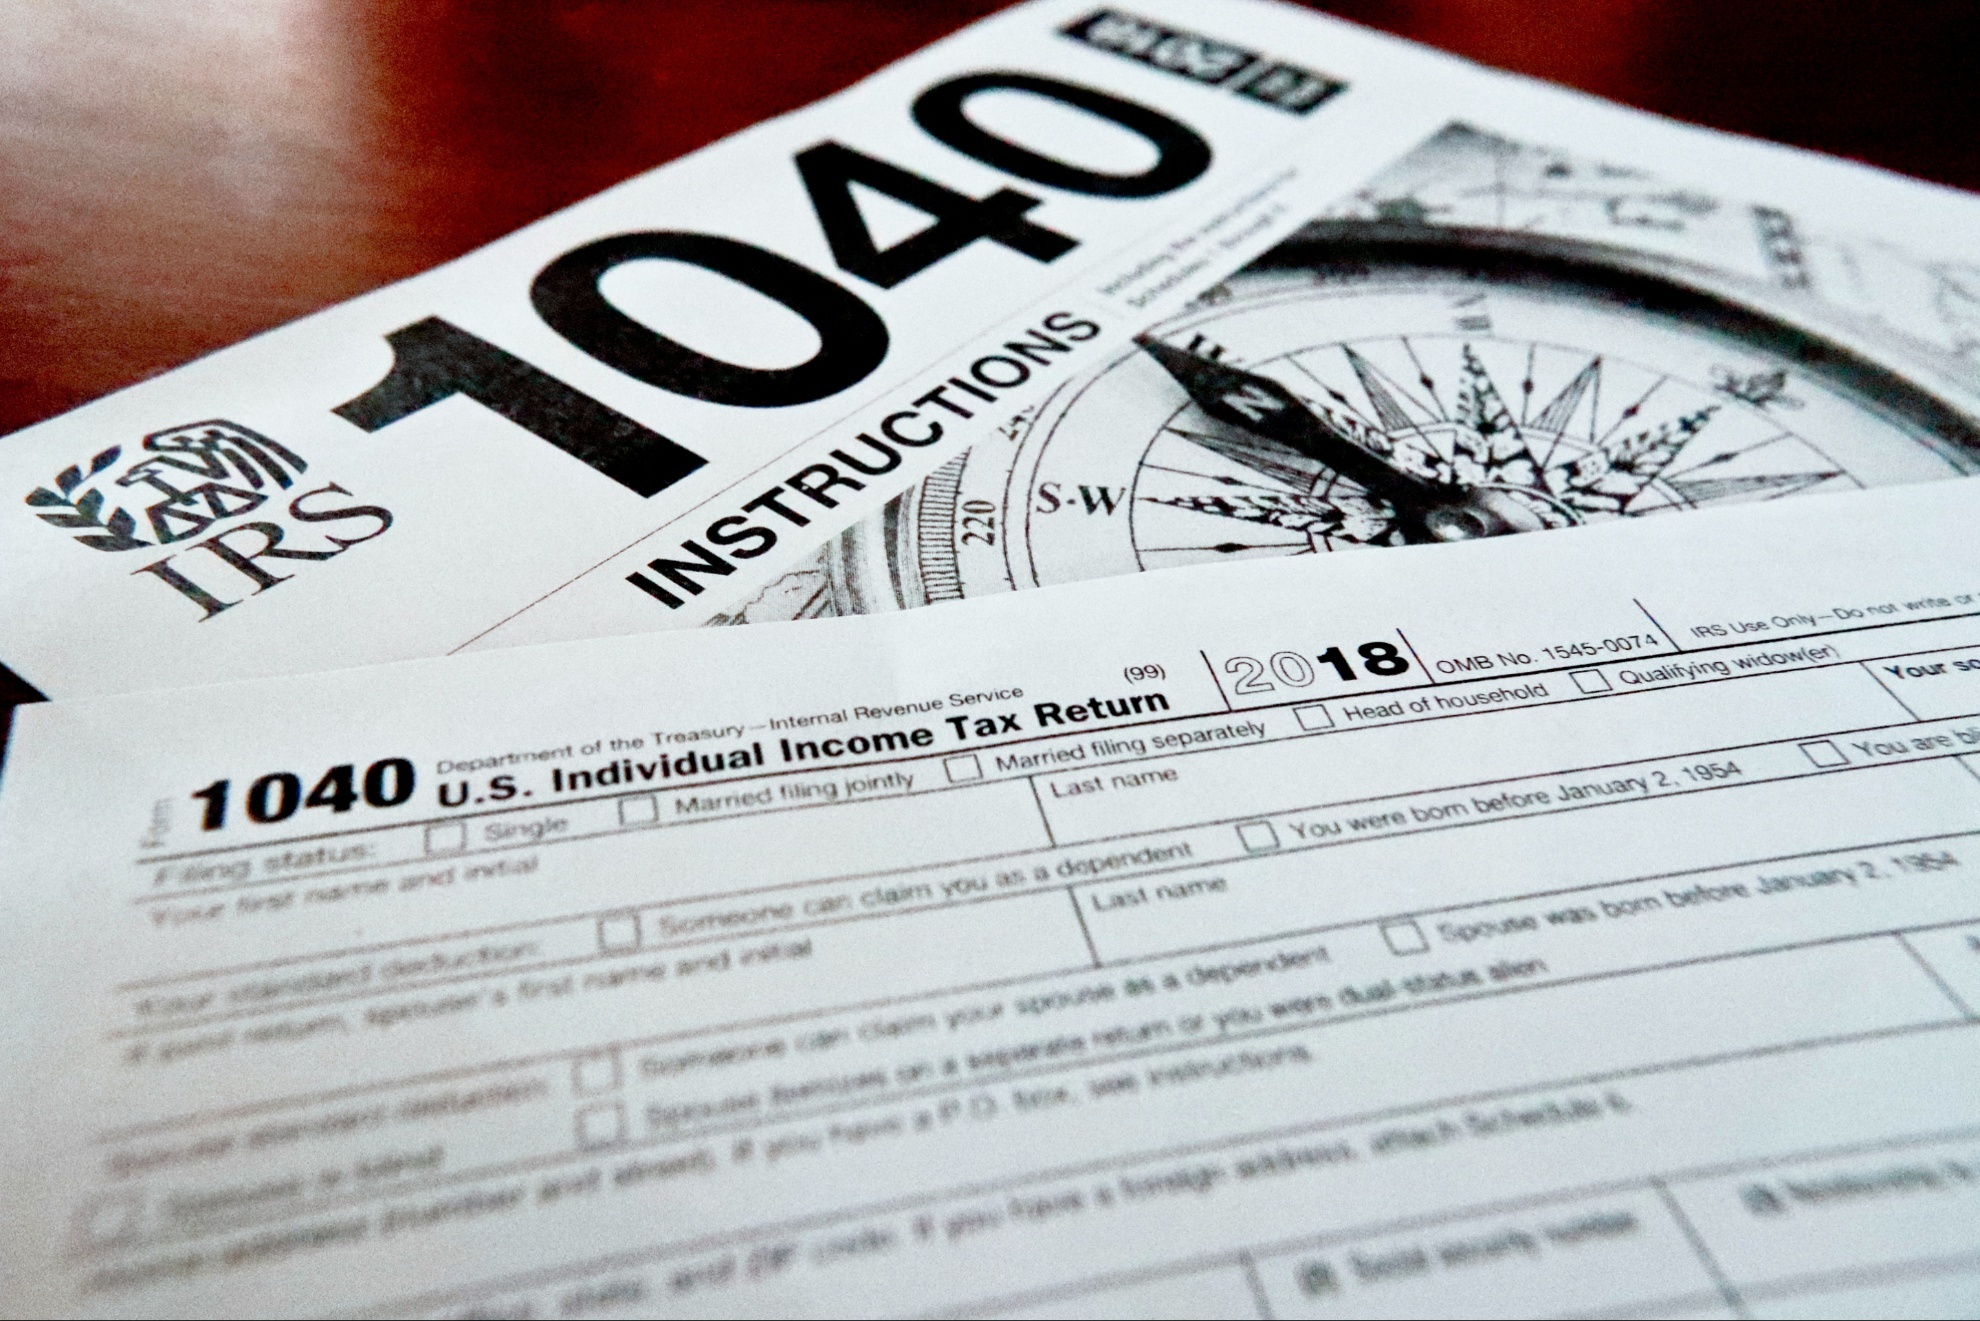 IRS tax return forms.